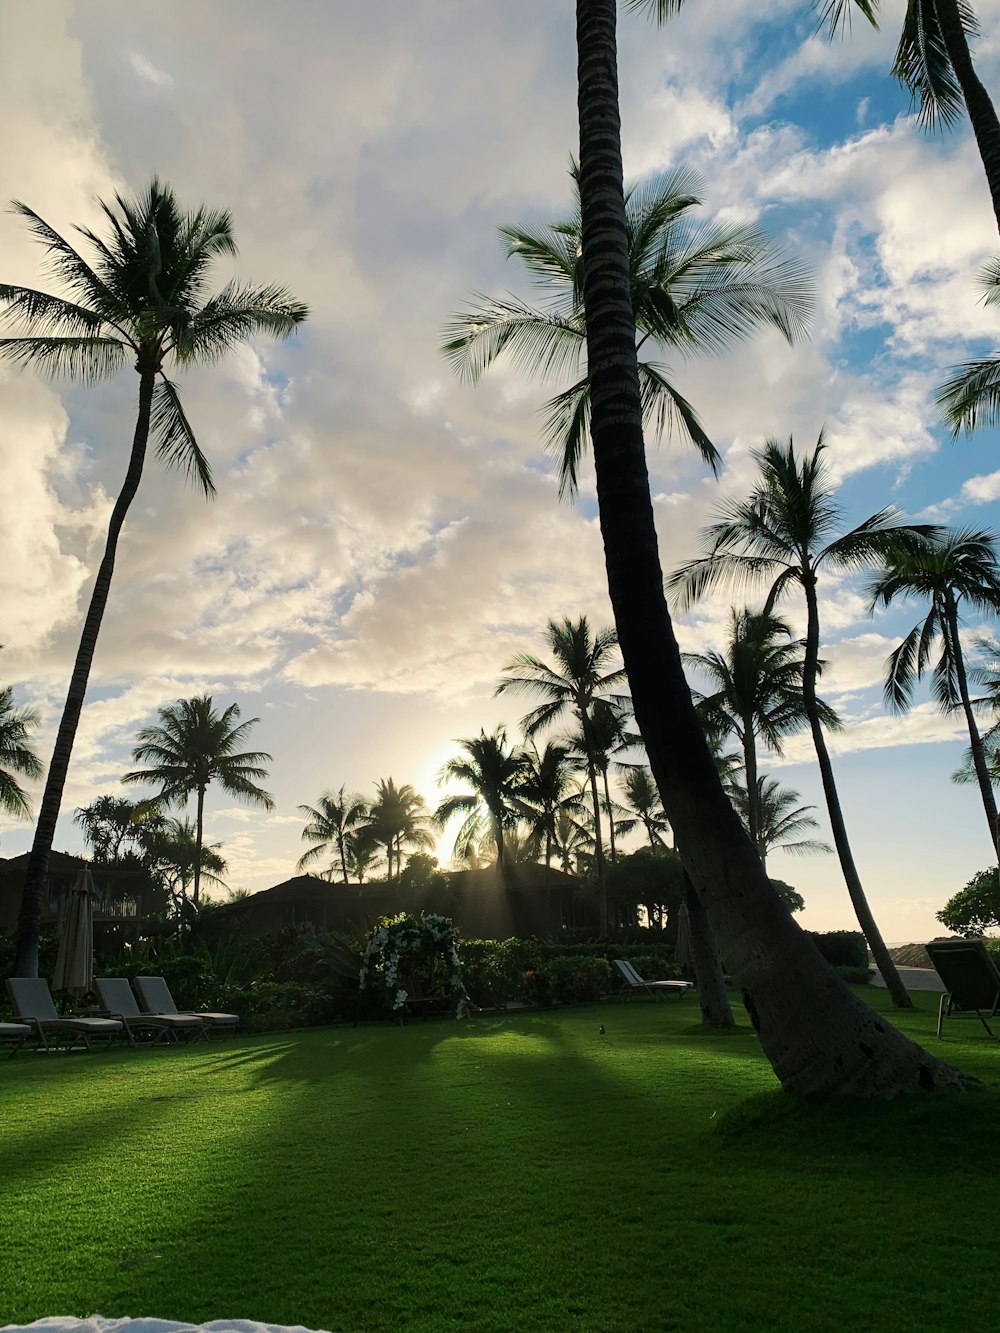 palmiers verts sur un champ d’herbe verte pendant la journée